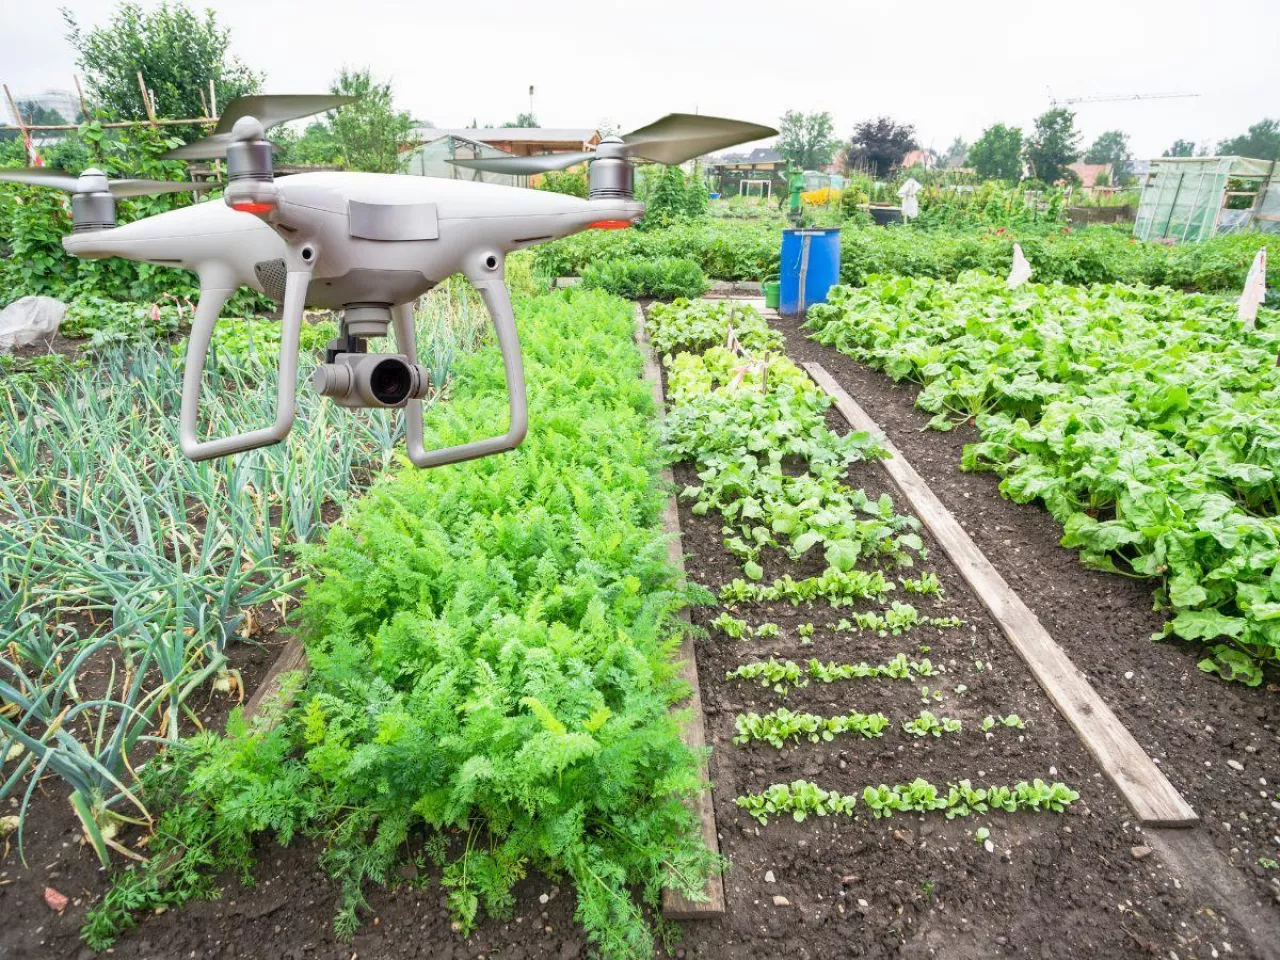 Sztuczna inteligencja w ogródku! Jak może pomóc w uprawie warzyw i kwiatów?